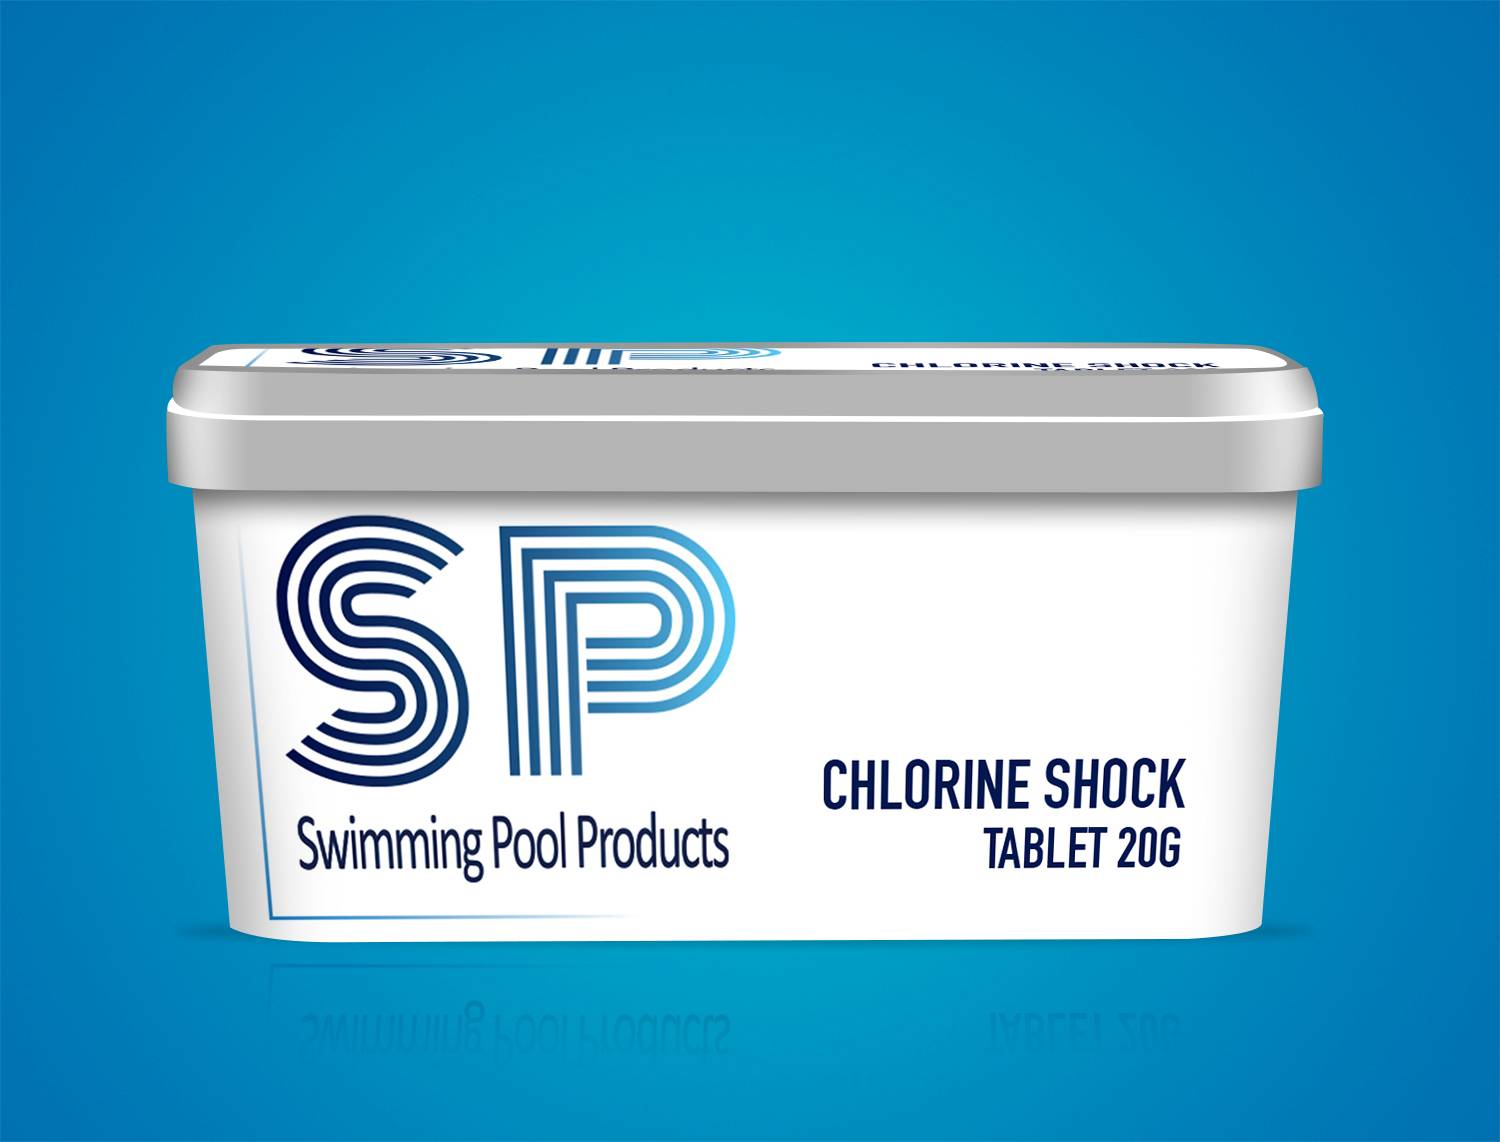 mock up du packaging de la boîte de pastilles de chlore de la marque SP swimming pool products